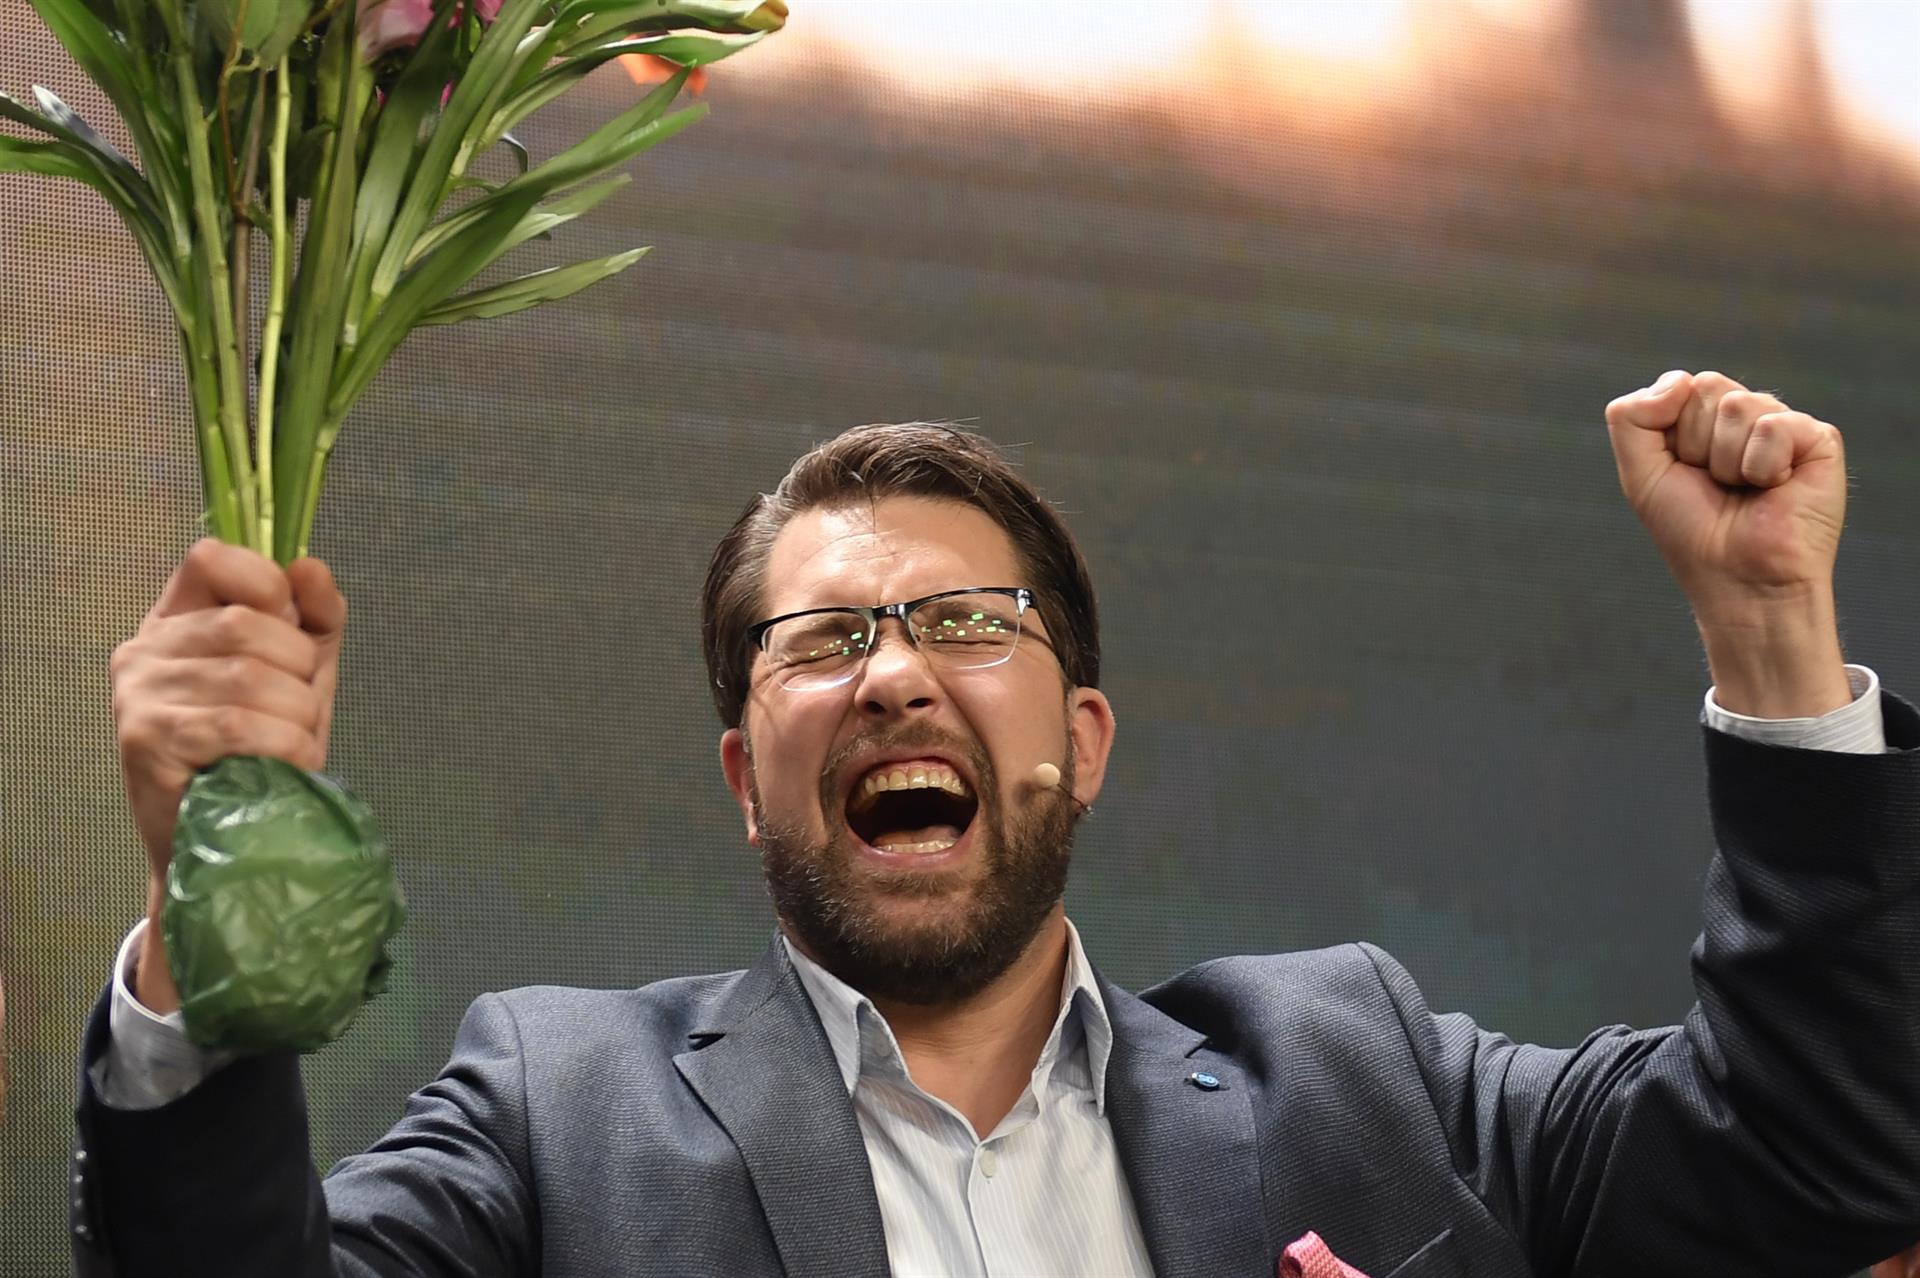 L'extrema dreta a Suècia es podria quedar fora del govern